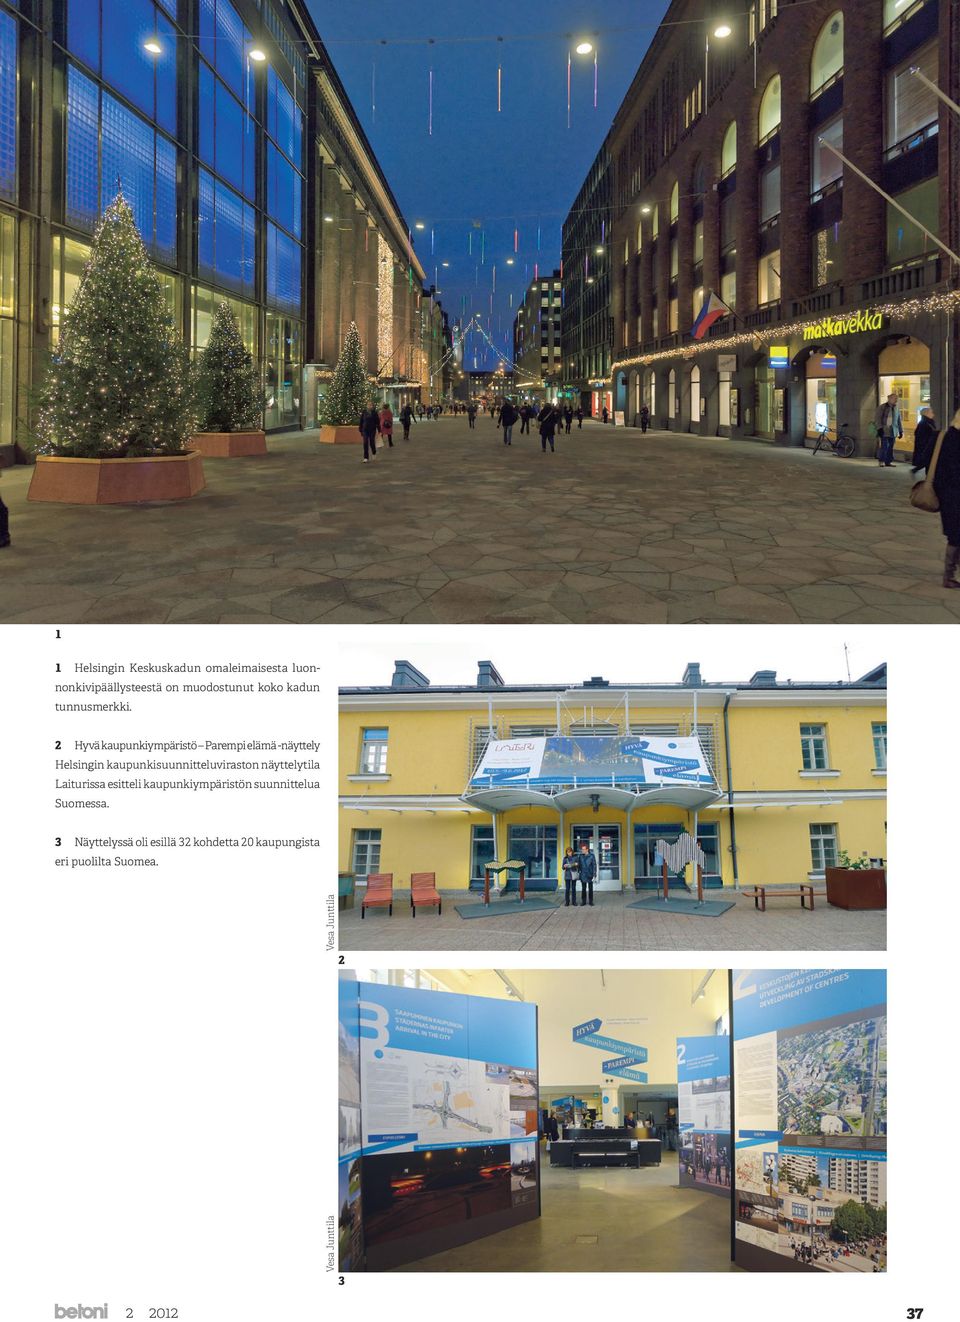 Tänä vuonna vietettävä World Design Capital Helsinki 2012 -vuoden pääteema on Avoin kaupunki paremman elämän edellytyksiä kaupunkilaisille.